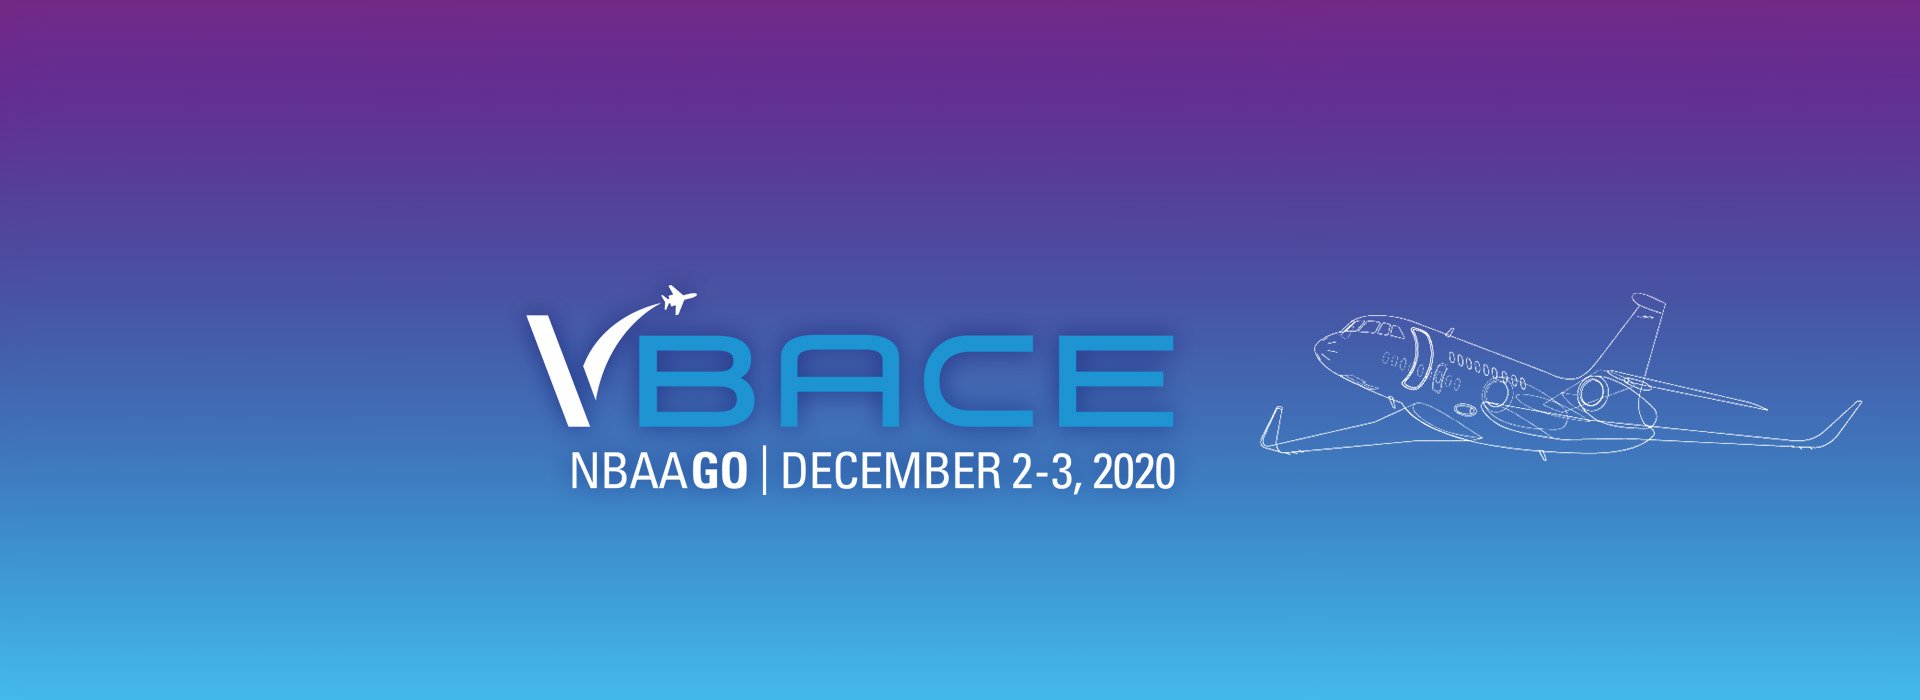 Visit Euro Jet at VBACE and Win!